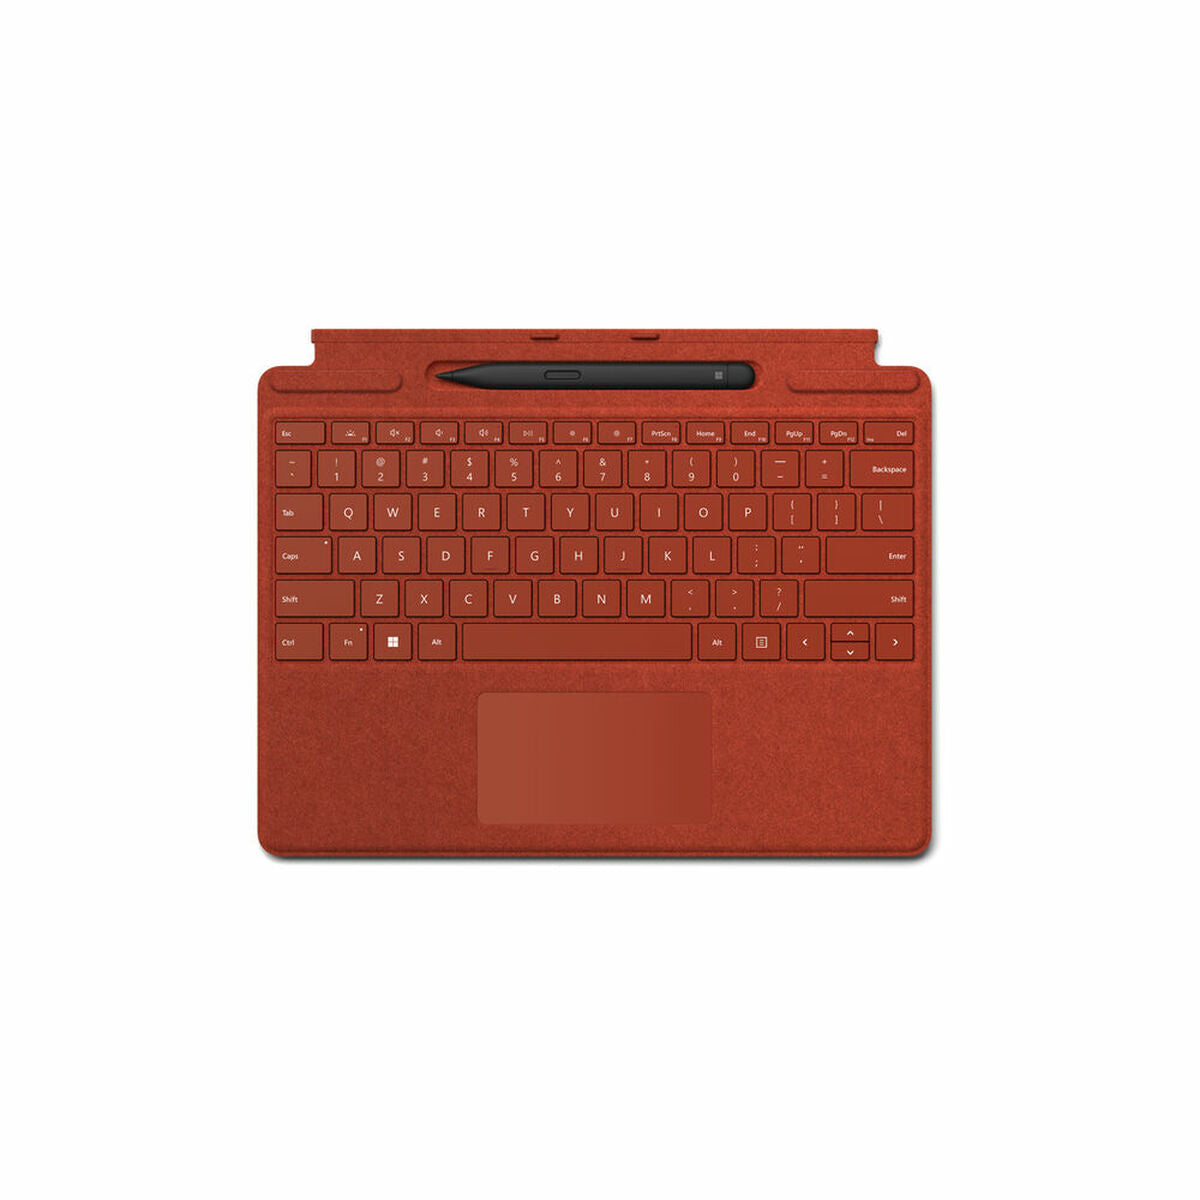 Microsoft-Tastatur 8X8-00032 Rot Spanisch Spanisch Qwerty